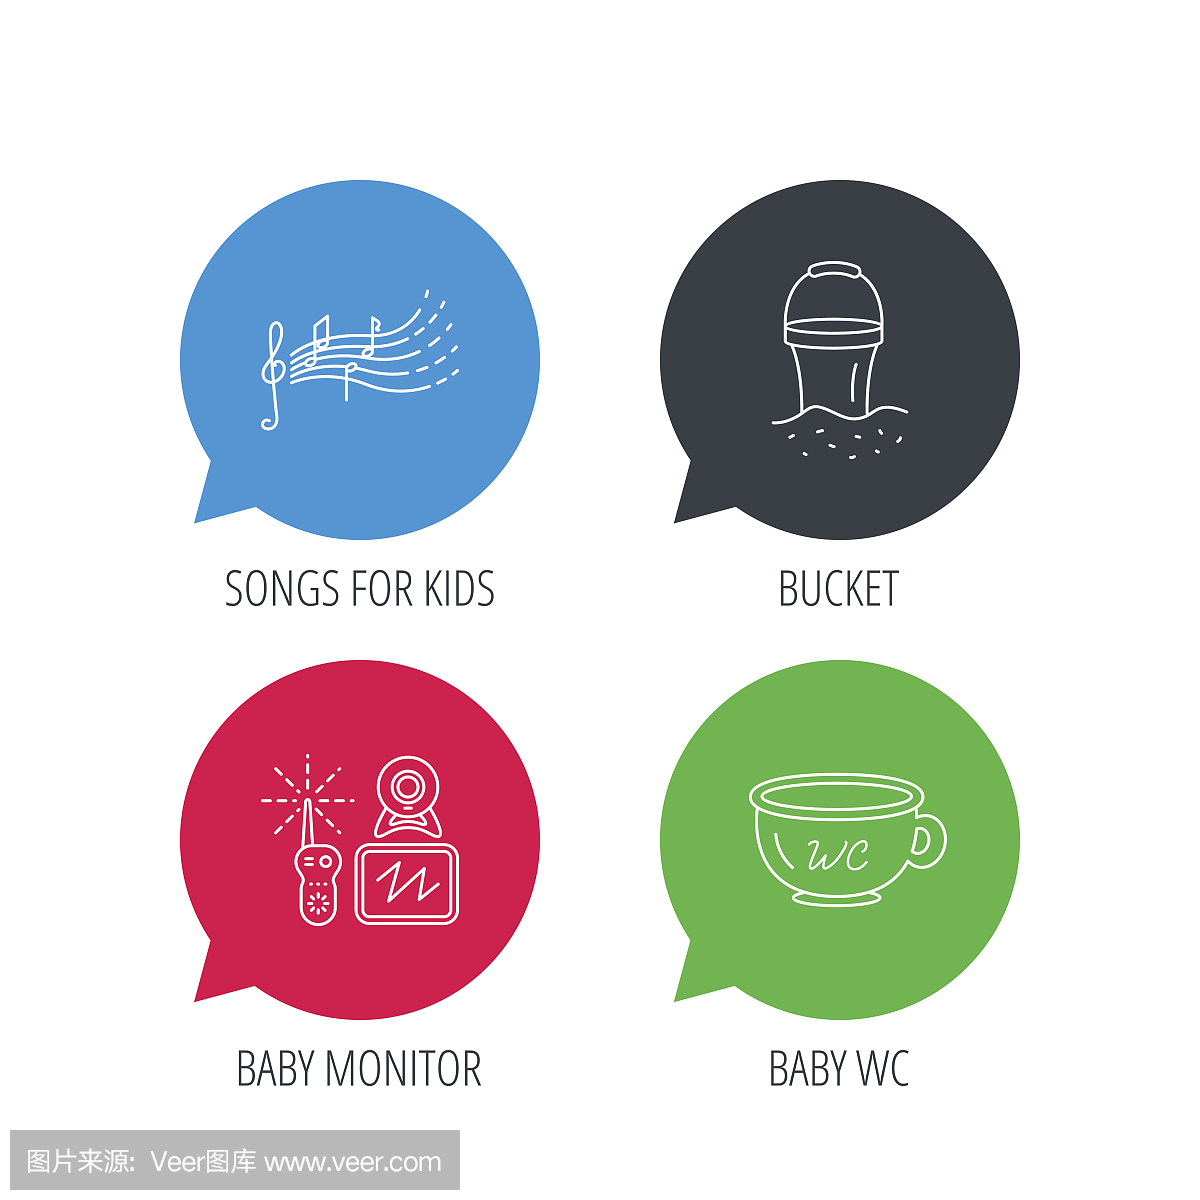 宝贝wc,视频监控和歌曲图标。